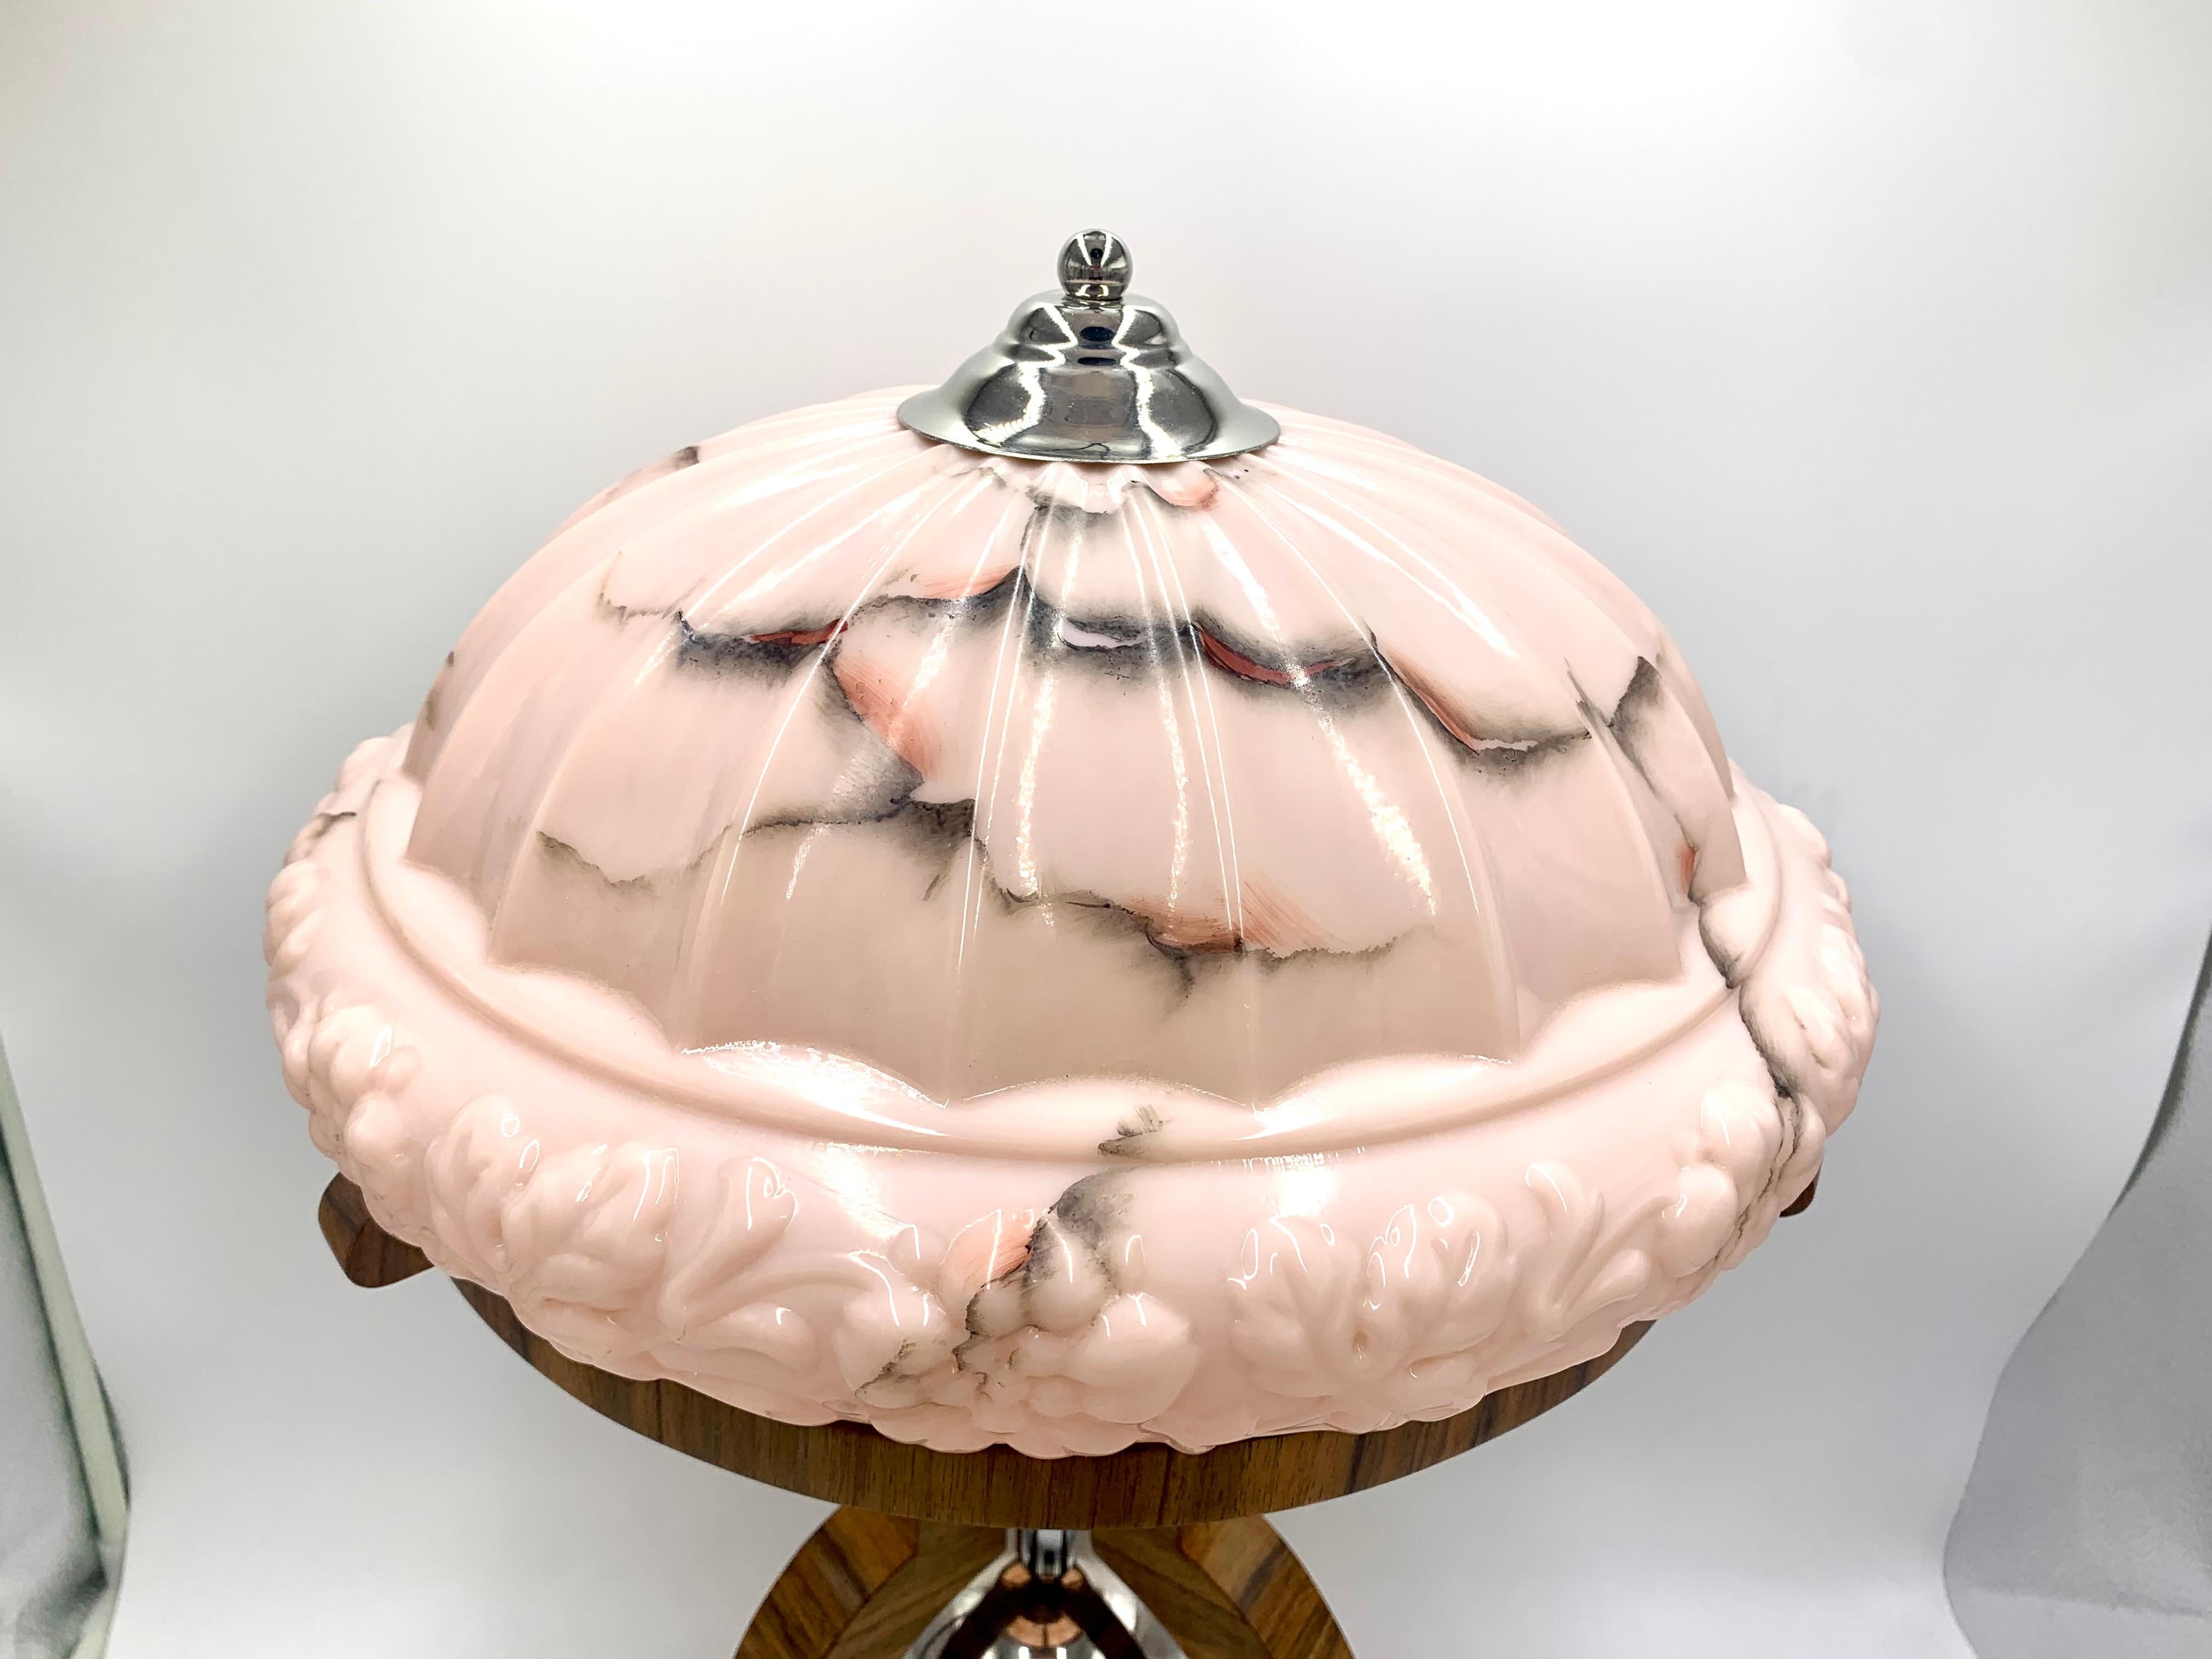 Art Deco Tischlampe mit einem großen dekorativen rosa Schirm.

Hergestellt in Polen in den 1950er Jahren.

Das Gestell wird aus lackiertem Nussbaumholz gefertigt.

Neues Kabel.

Sehr guter Zustand.

Maße: Höhe: 61 cm Durchmesser des